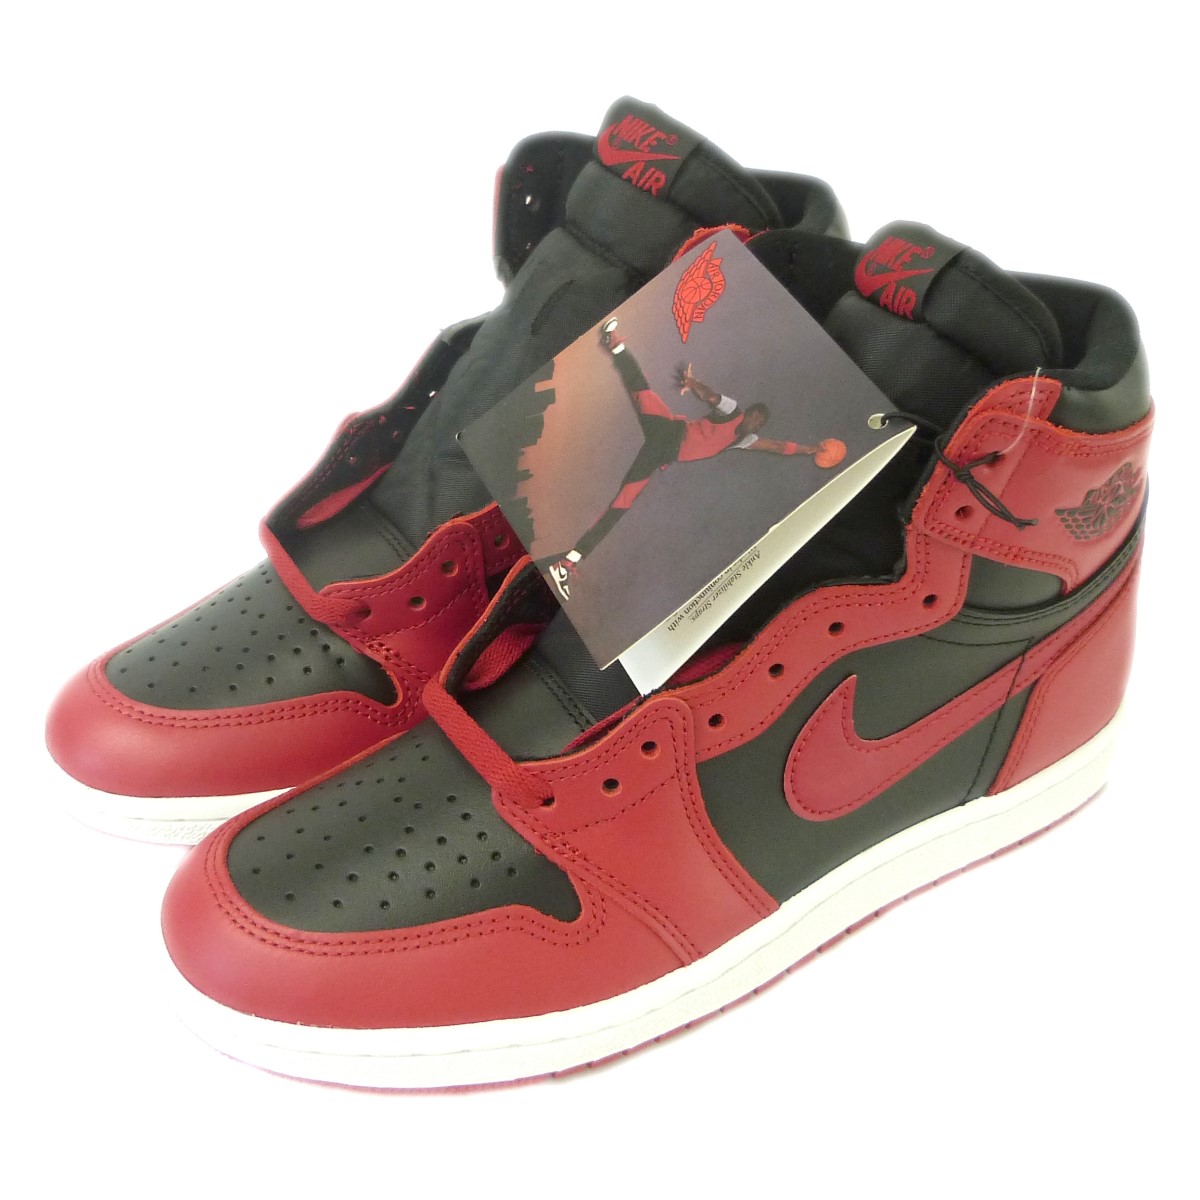 Nike Air Jordan ナイキ エアジョーダン を神戸で売るなら高価買取のカインドオル元町店へ カインドオル Kindal 神戸元町店 ブランド古着買取 販売 通販